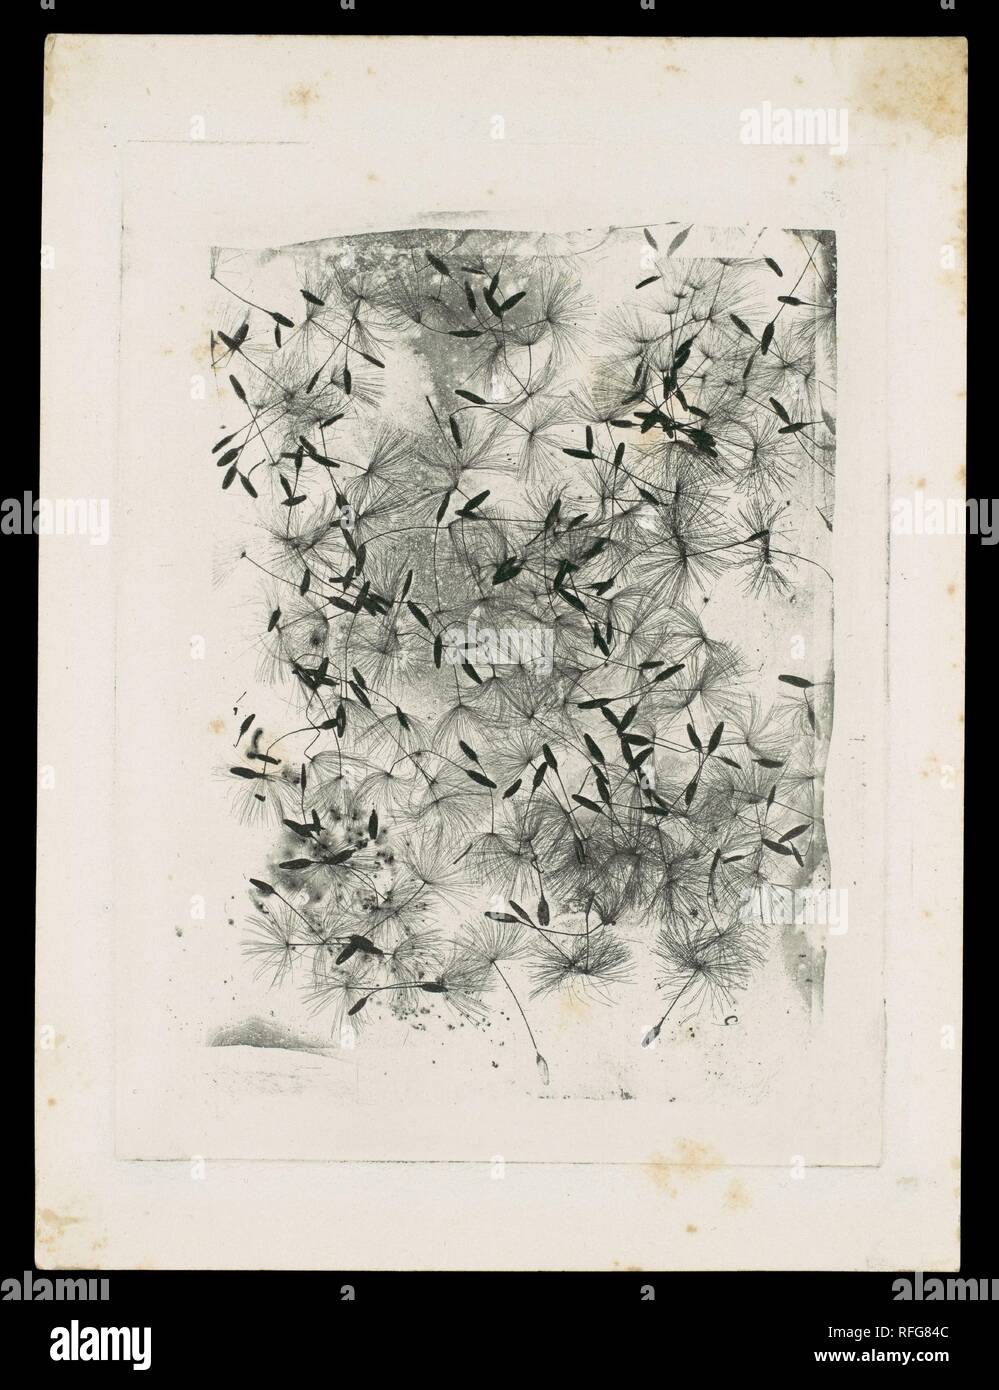 [Tarassaco sementi]. Artista: William Henry Fox Talbot (British, Dorset 1800-1877 Lacock). Dimensioni: foglio: 15,1 x 11,3 cm (5 15/16 x 4 7/16 in.), Piastra: 12,5 x 9,4 cm (4 15/16 x 3 11/16 in.) immagine: 10,5 x 7,6 cm (4 1/8 x 3 in.). Data: 1858 o versioni successive. Questa prova sperimentale è un buon esempio della capacità di Talbot 'incisione photoglyphic' per produrre risultati fotografici che possono essere stampati su una pressa utilizzando inchiostro della stampante a più di un processo permanente di fotografie realizzate con la luce e le sostanze chimiche. Come Talbot dei primi esempi fotografici, l'immagine qui è stata fotograficamente trasferiti Foto Stock